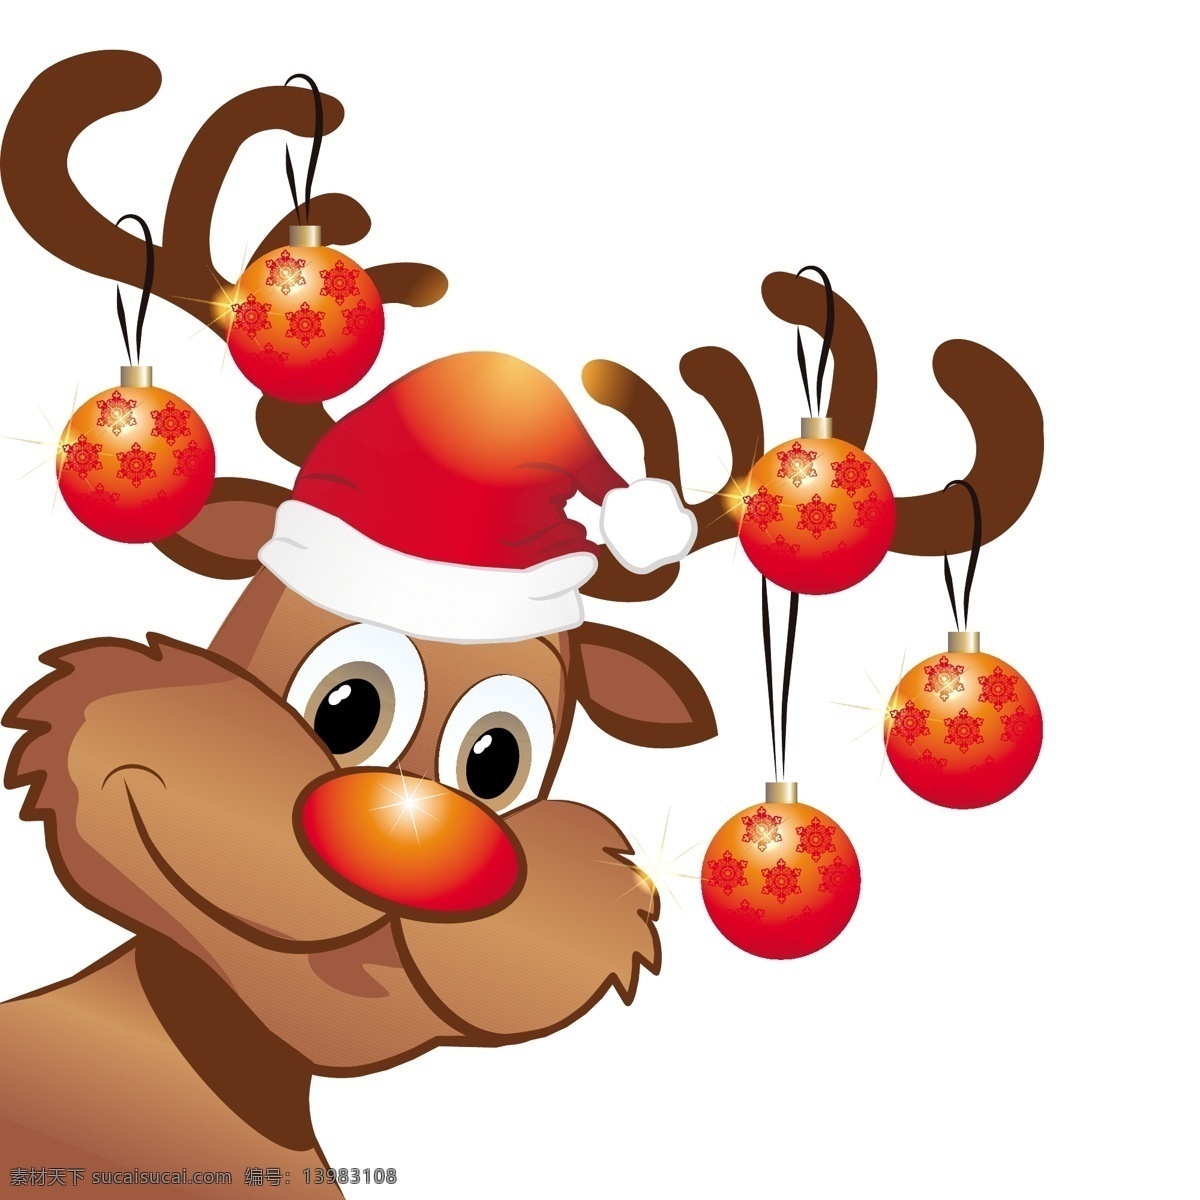 卡通圣诞麋鹿 卡通 圣诞 圣诞节 圣诞鹿 麋鹿 可爱 插画 冬季 矢量素材 元素 矢量 节日素材